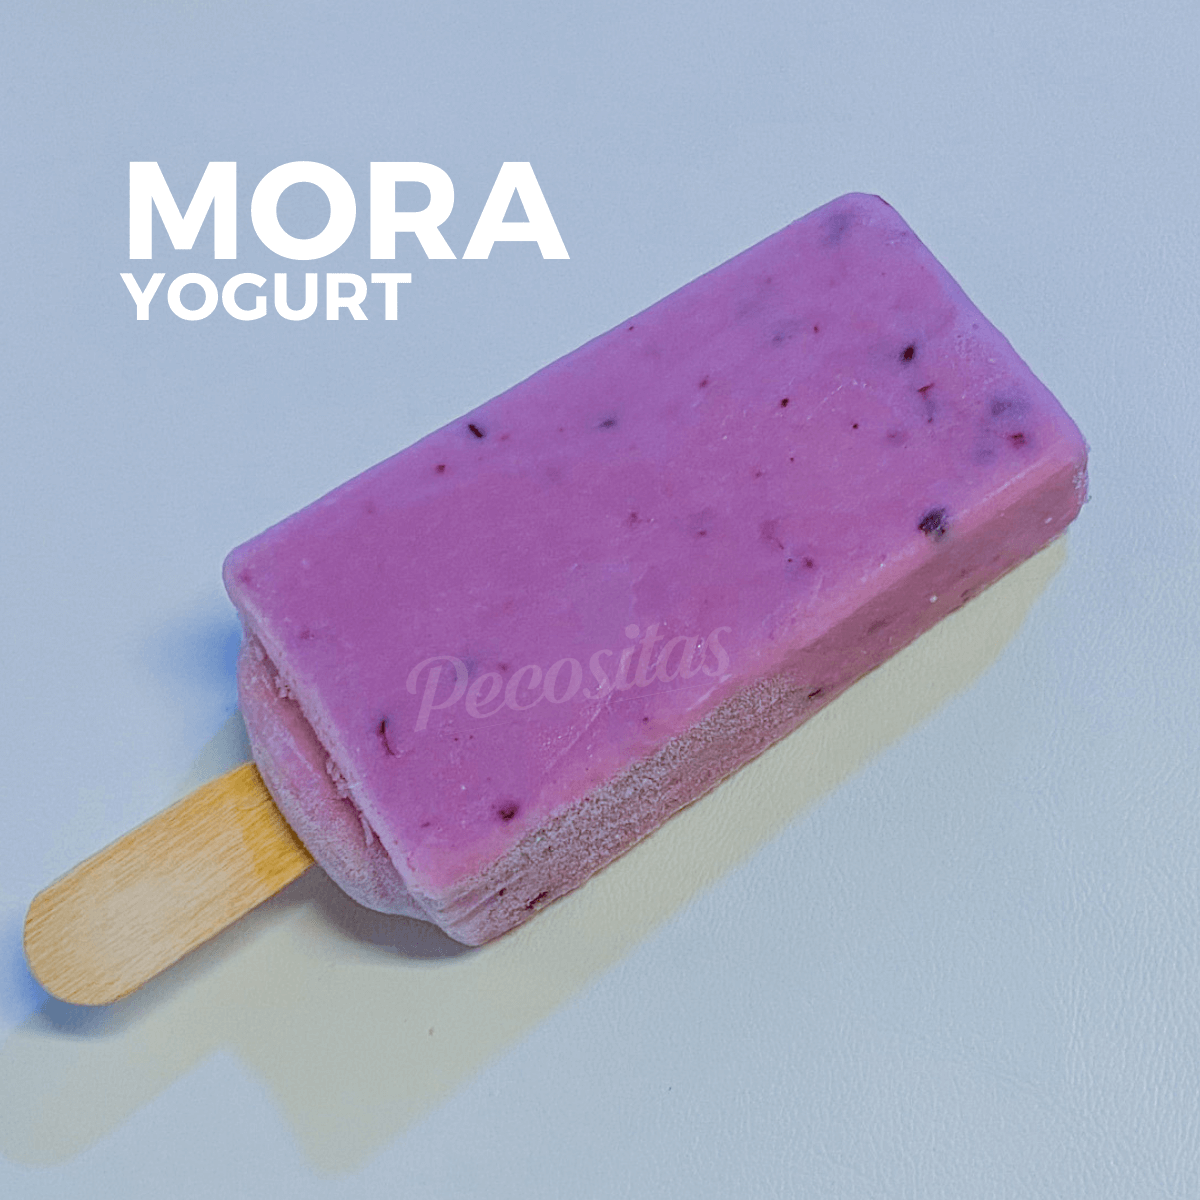 Mora - Yogurt